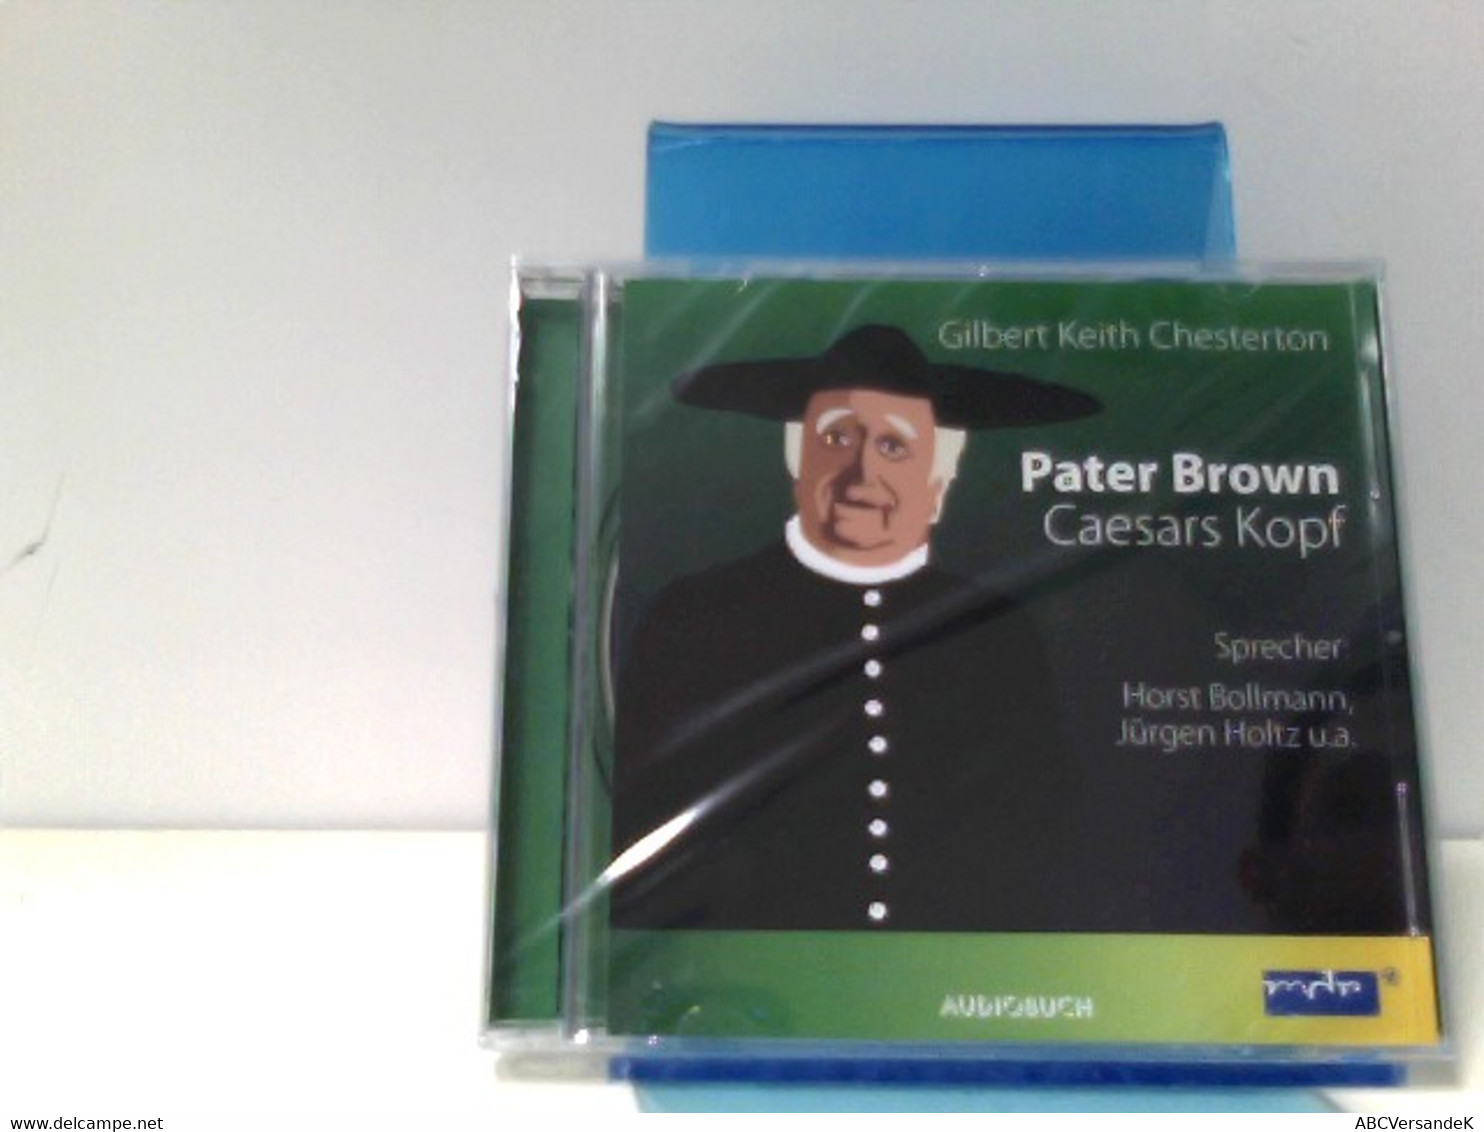 Pater Brown - Caesars Kopf - CD